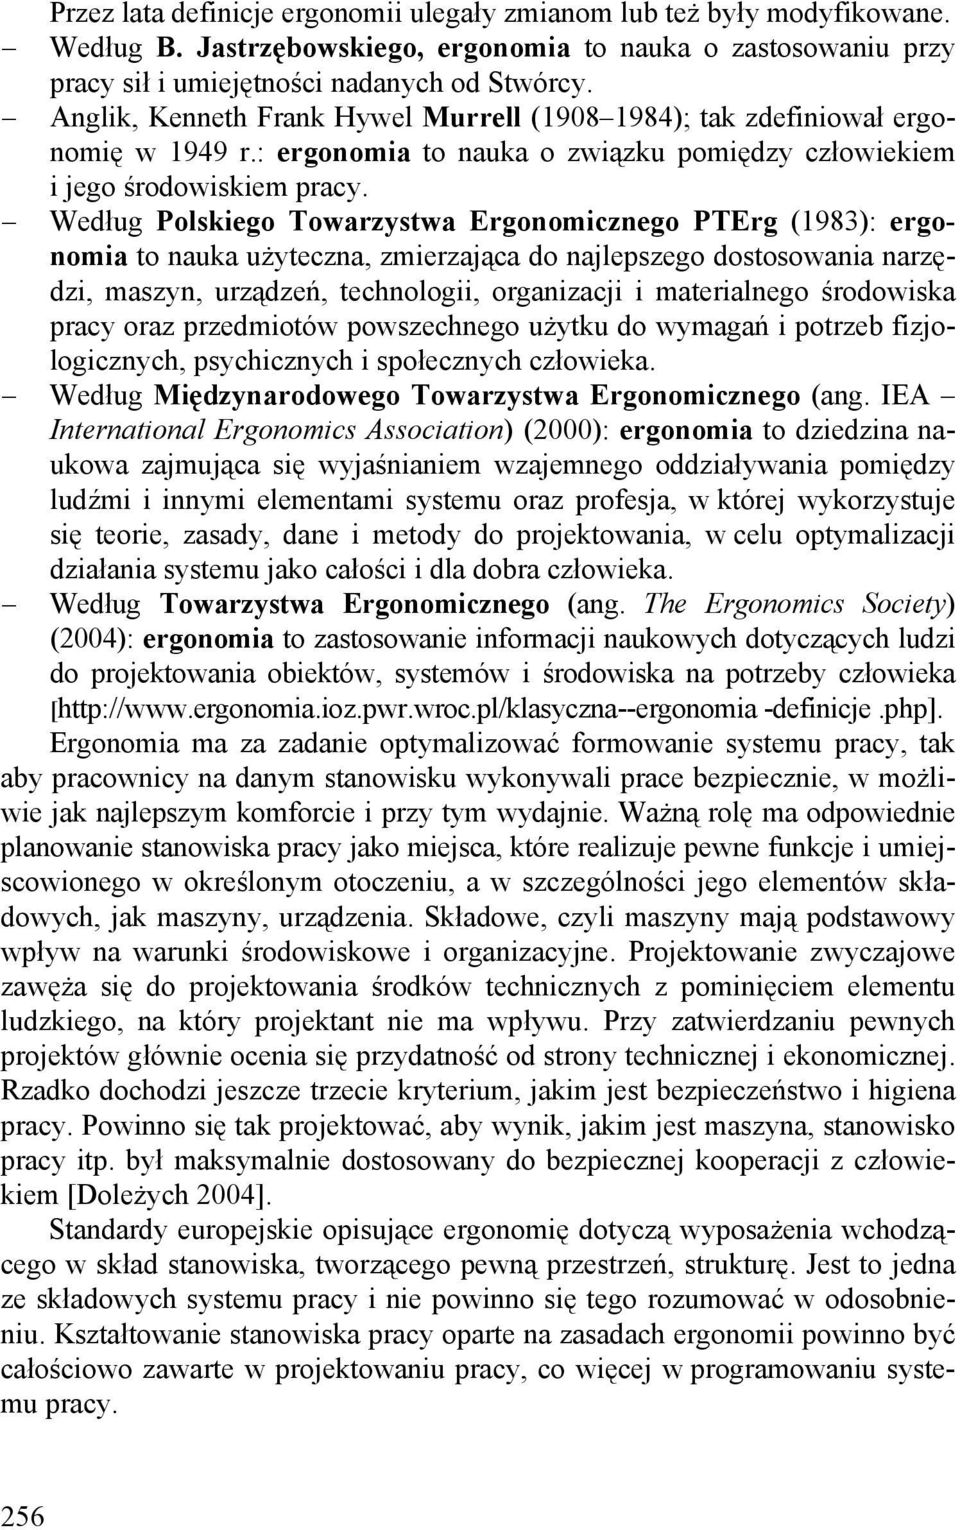 Według Polskiego Towarzystwa Ergonomicznego PTErg (1983): ergonomia to nauka użyteczna, zmierzająca do najlepszego dostosowania narzędzi, maszyn, urządzeń, technologii, organizacji i materialnego